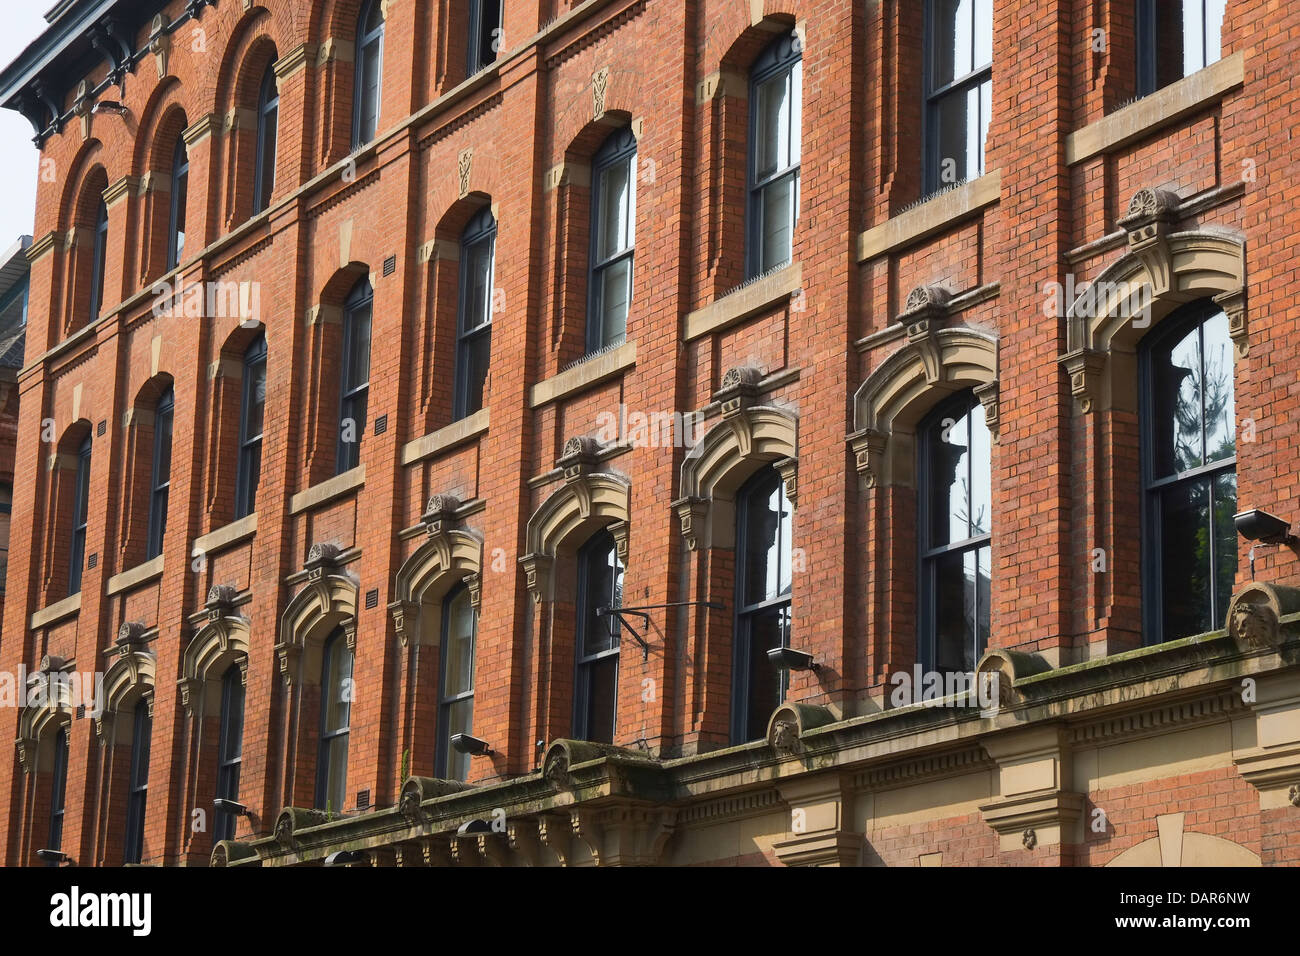 England, Manchester, Fassade der jetzt stillgelegten Feuerwache gegenüber dem Bahnhof Piccadilly Stockfoto